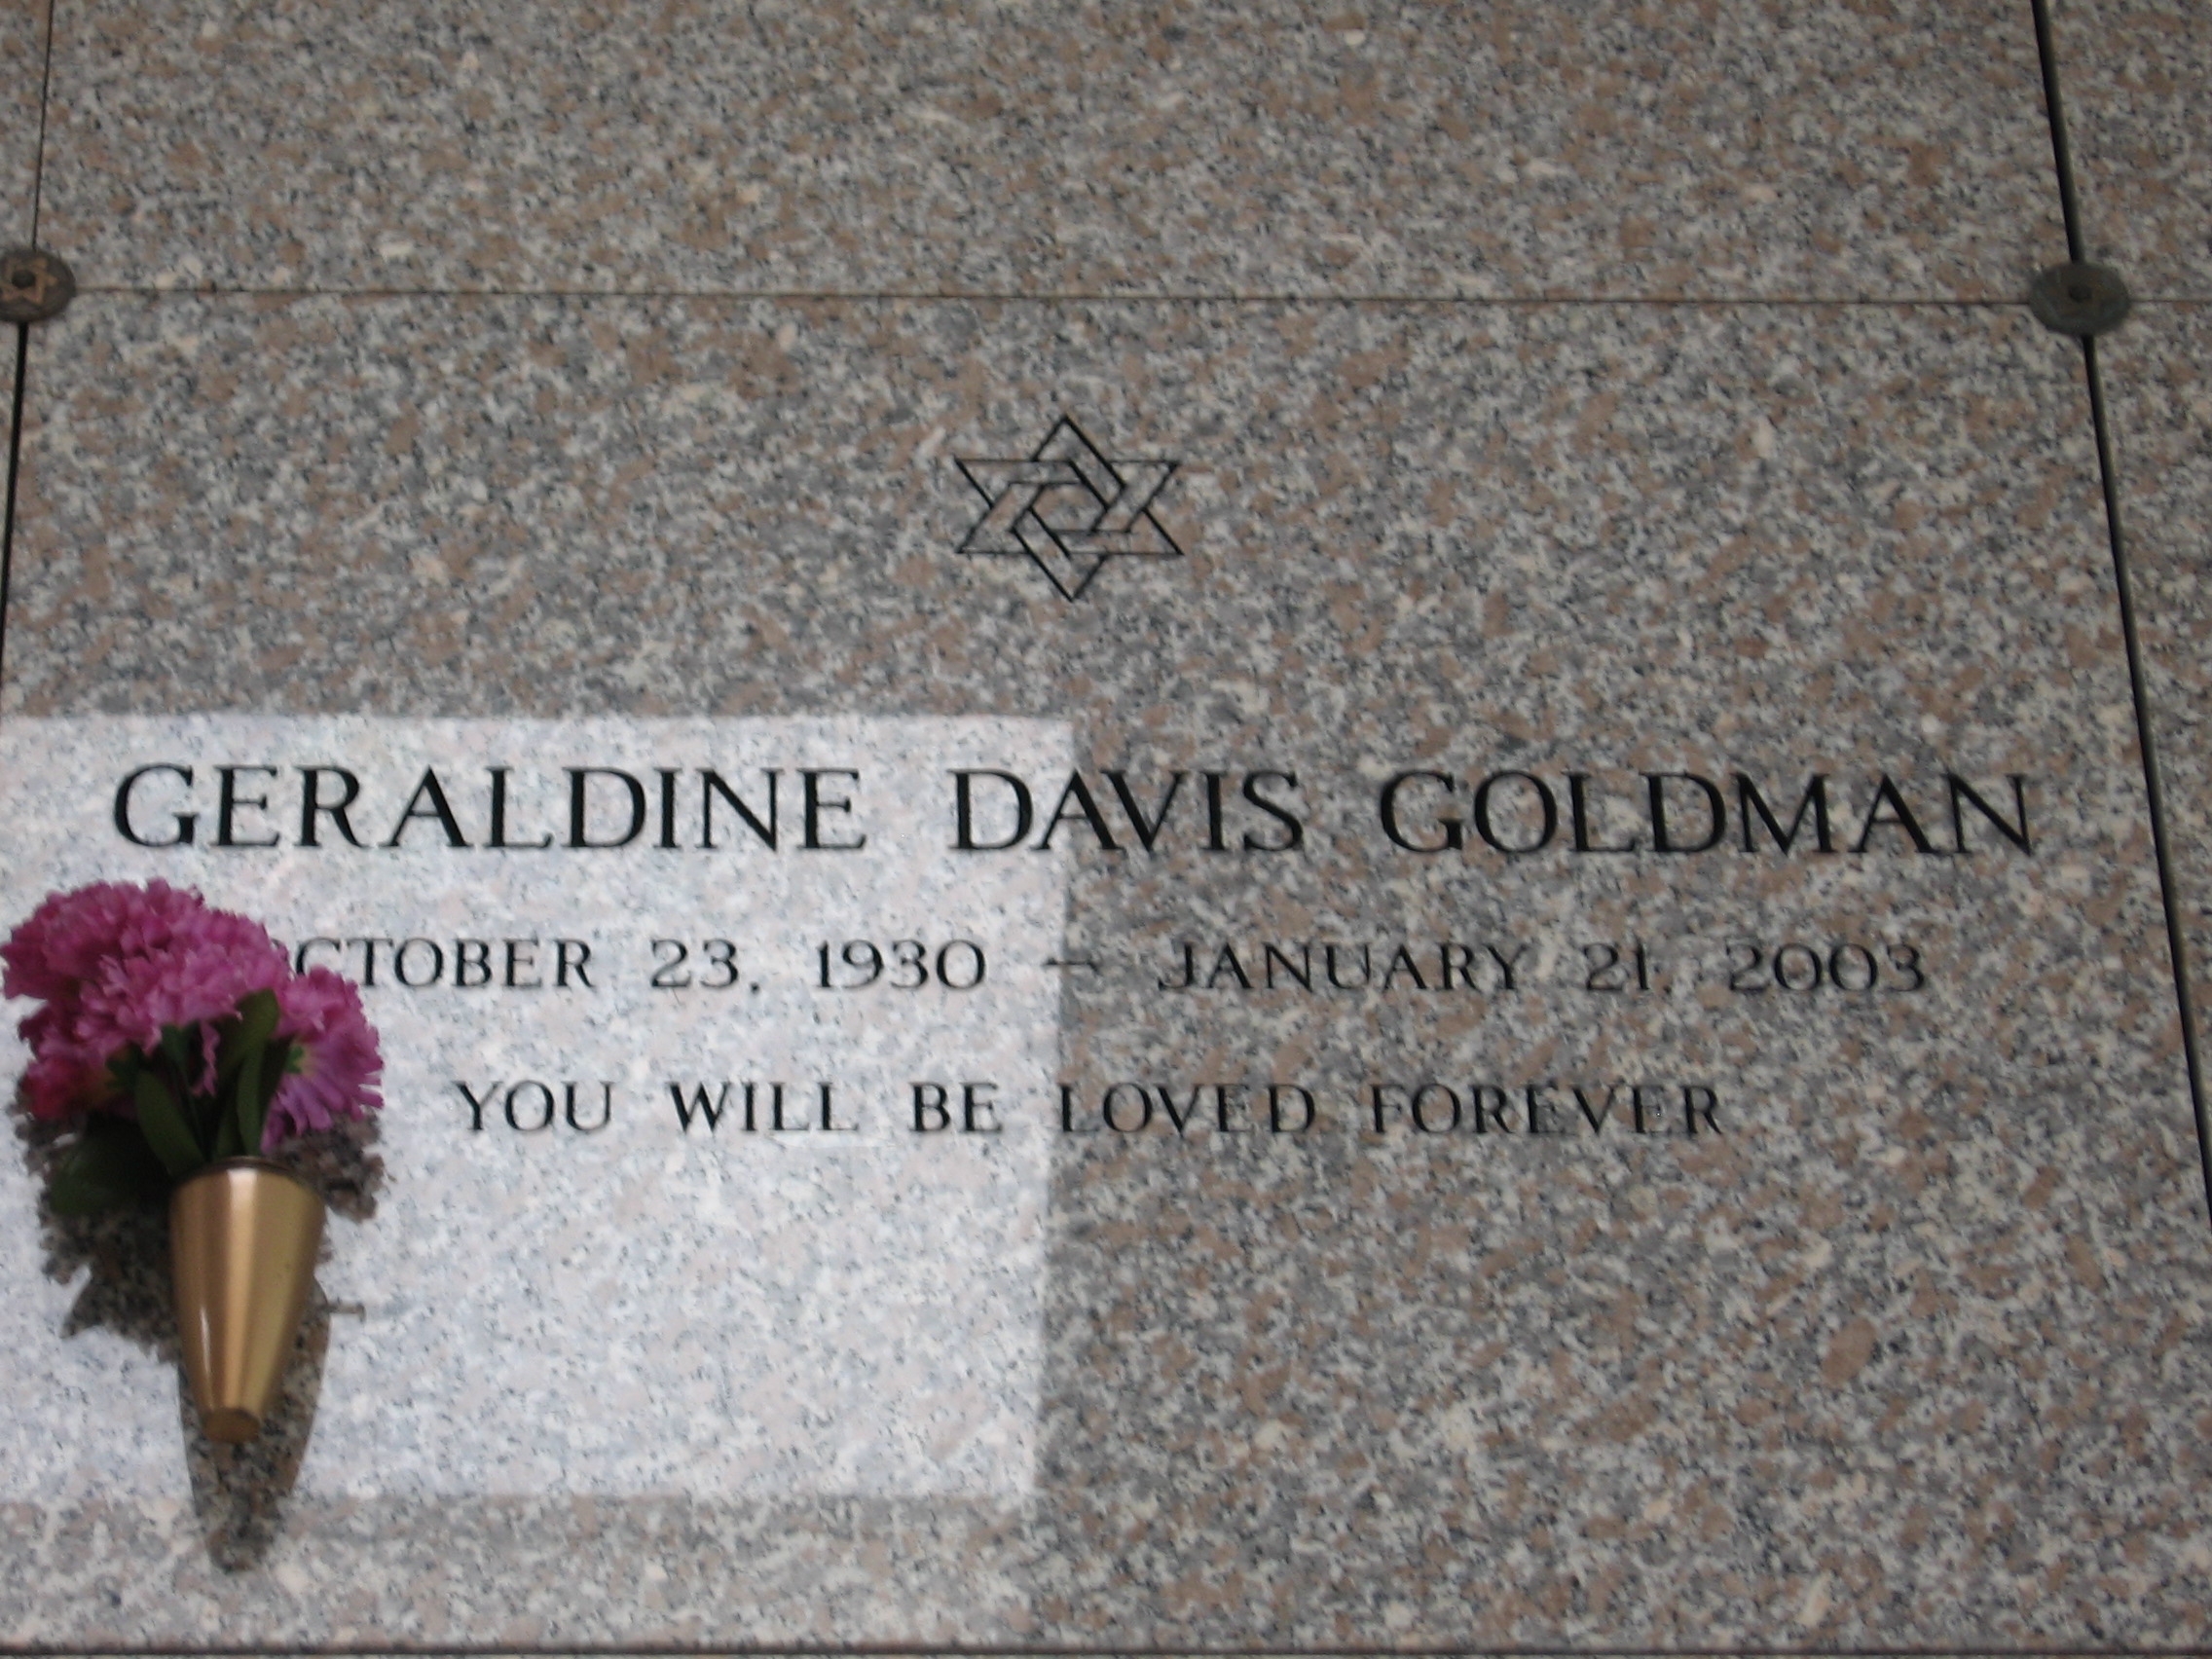 Geraldine Davis Goldman